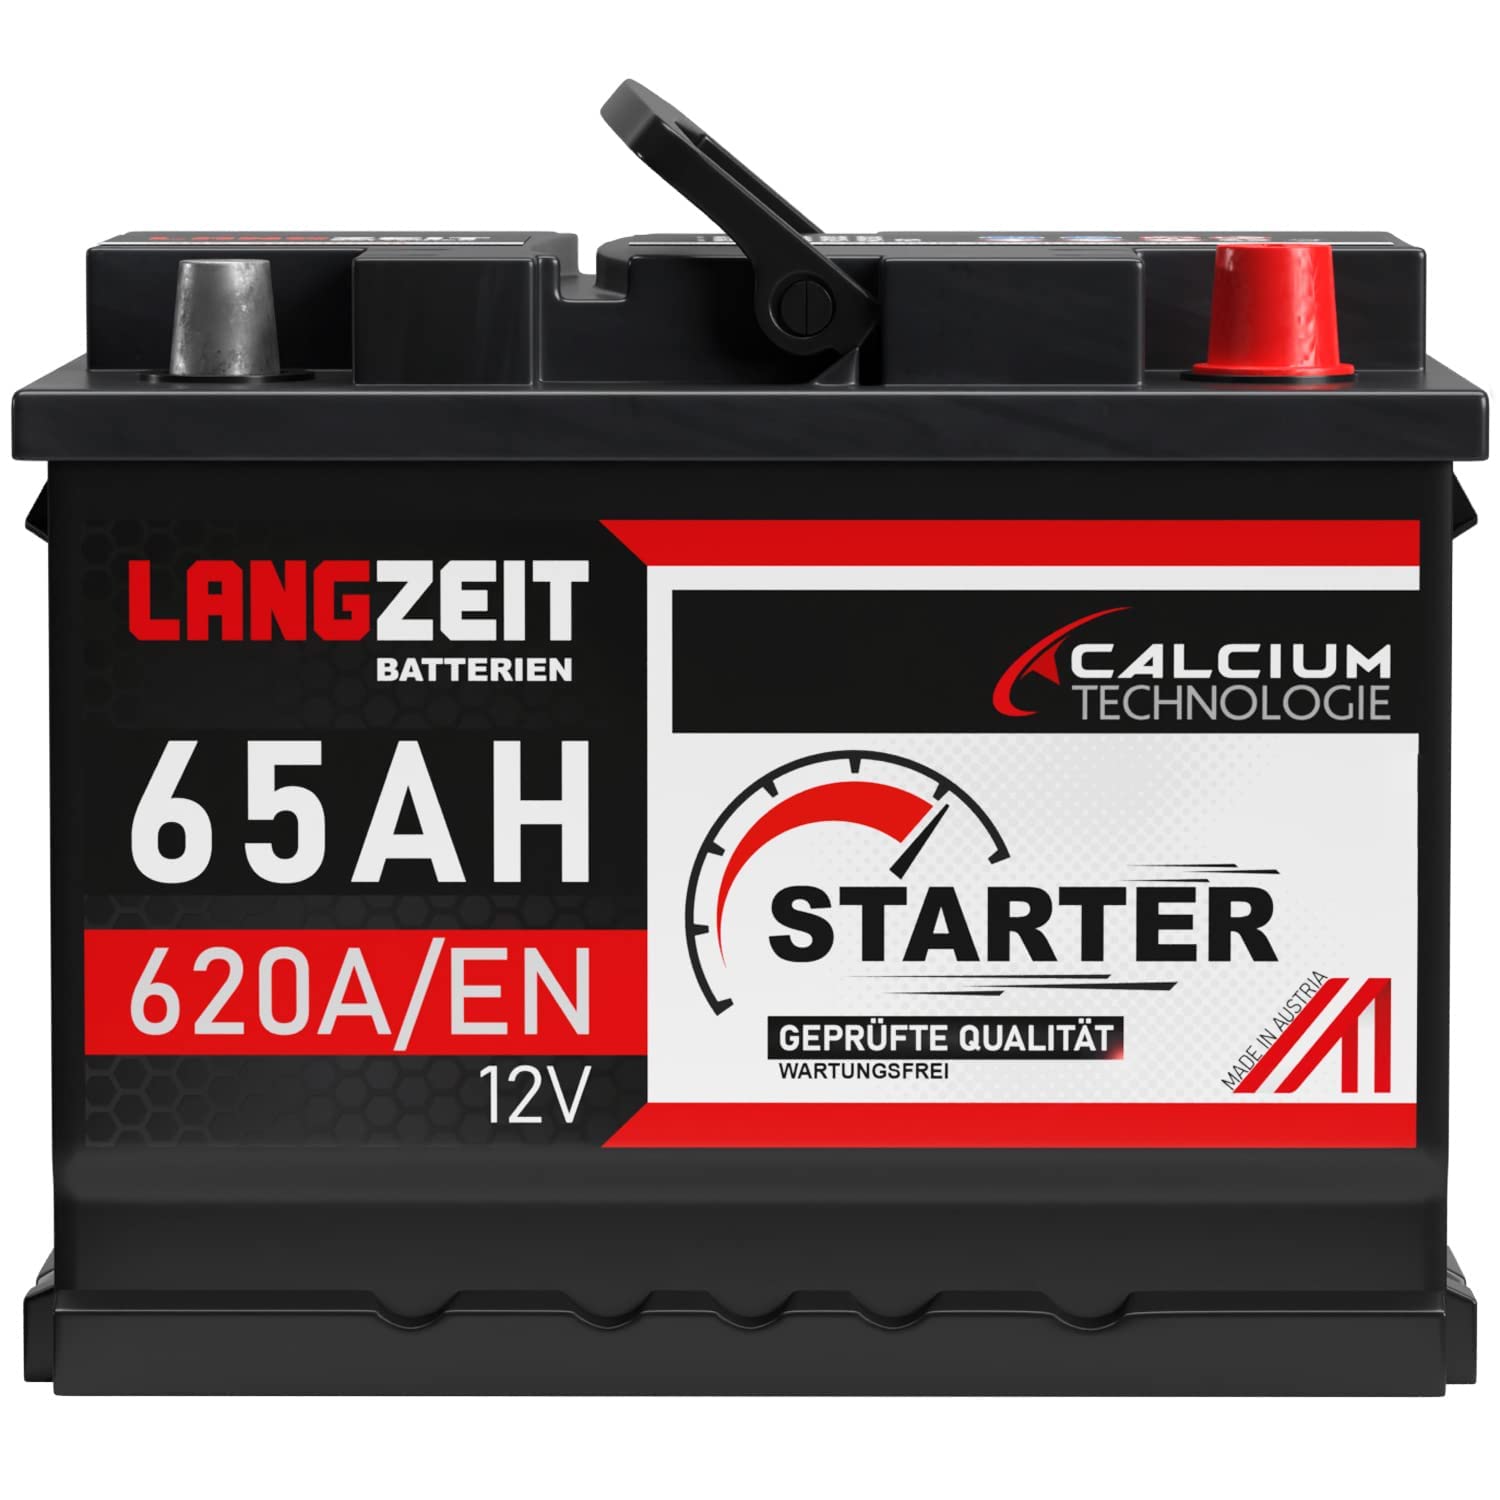 LANGZEIT lead acid, Autobatterie 65Ah 12V 620A/EN Starterbatterie +30% mehr Leistung ersetzt Batterie 55Ah 56Ah 60Ah 61Ah 62Ah 63Ah 64Ah, kompatibel mit PKW von LANGZEIT Batterien